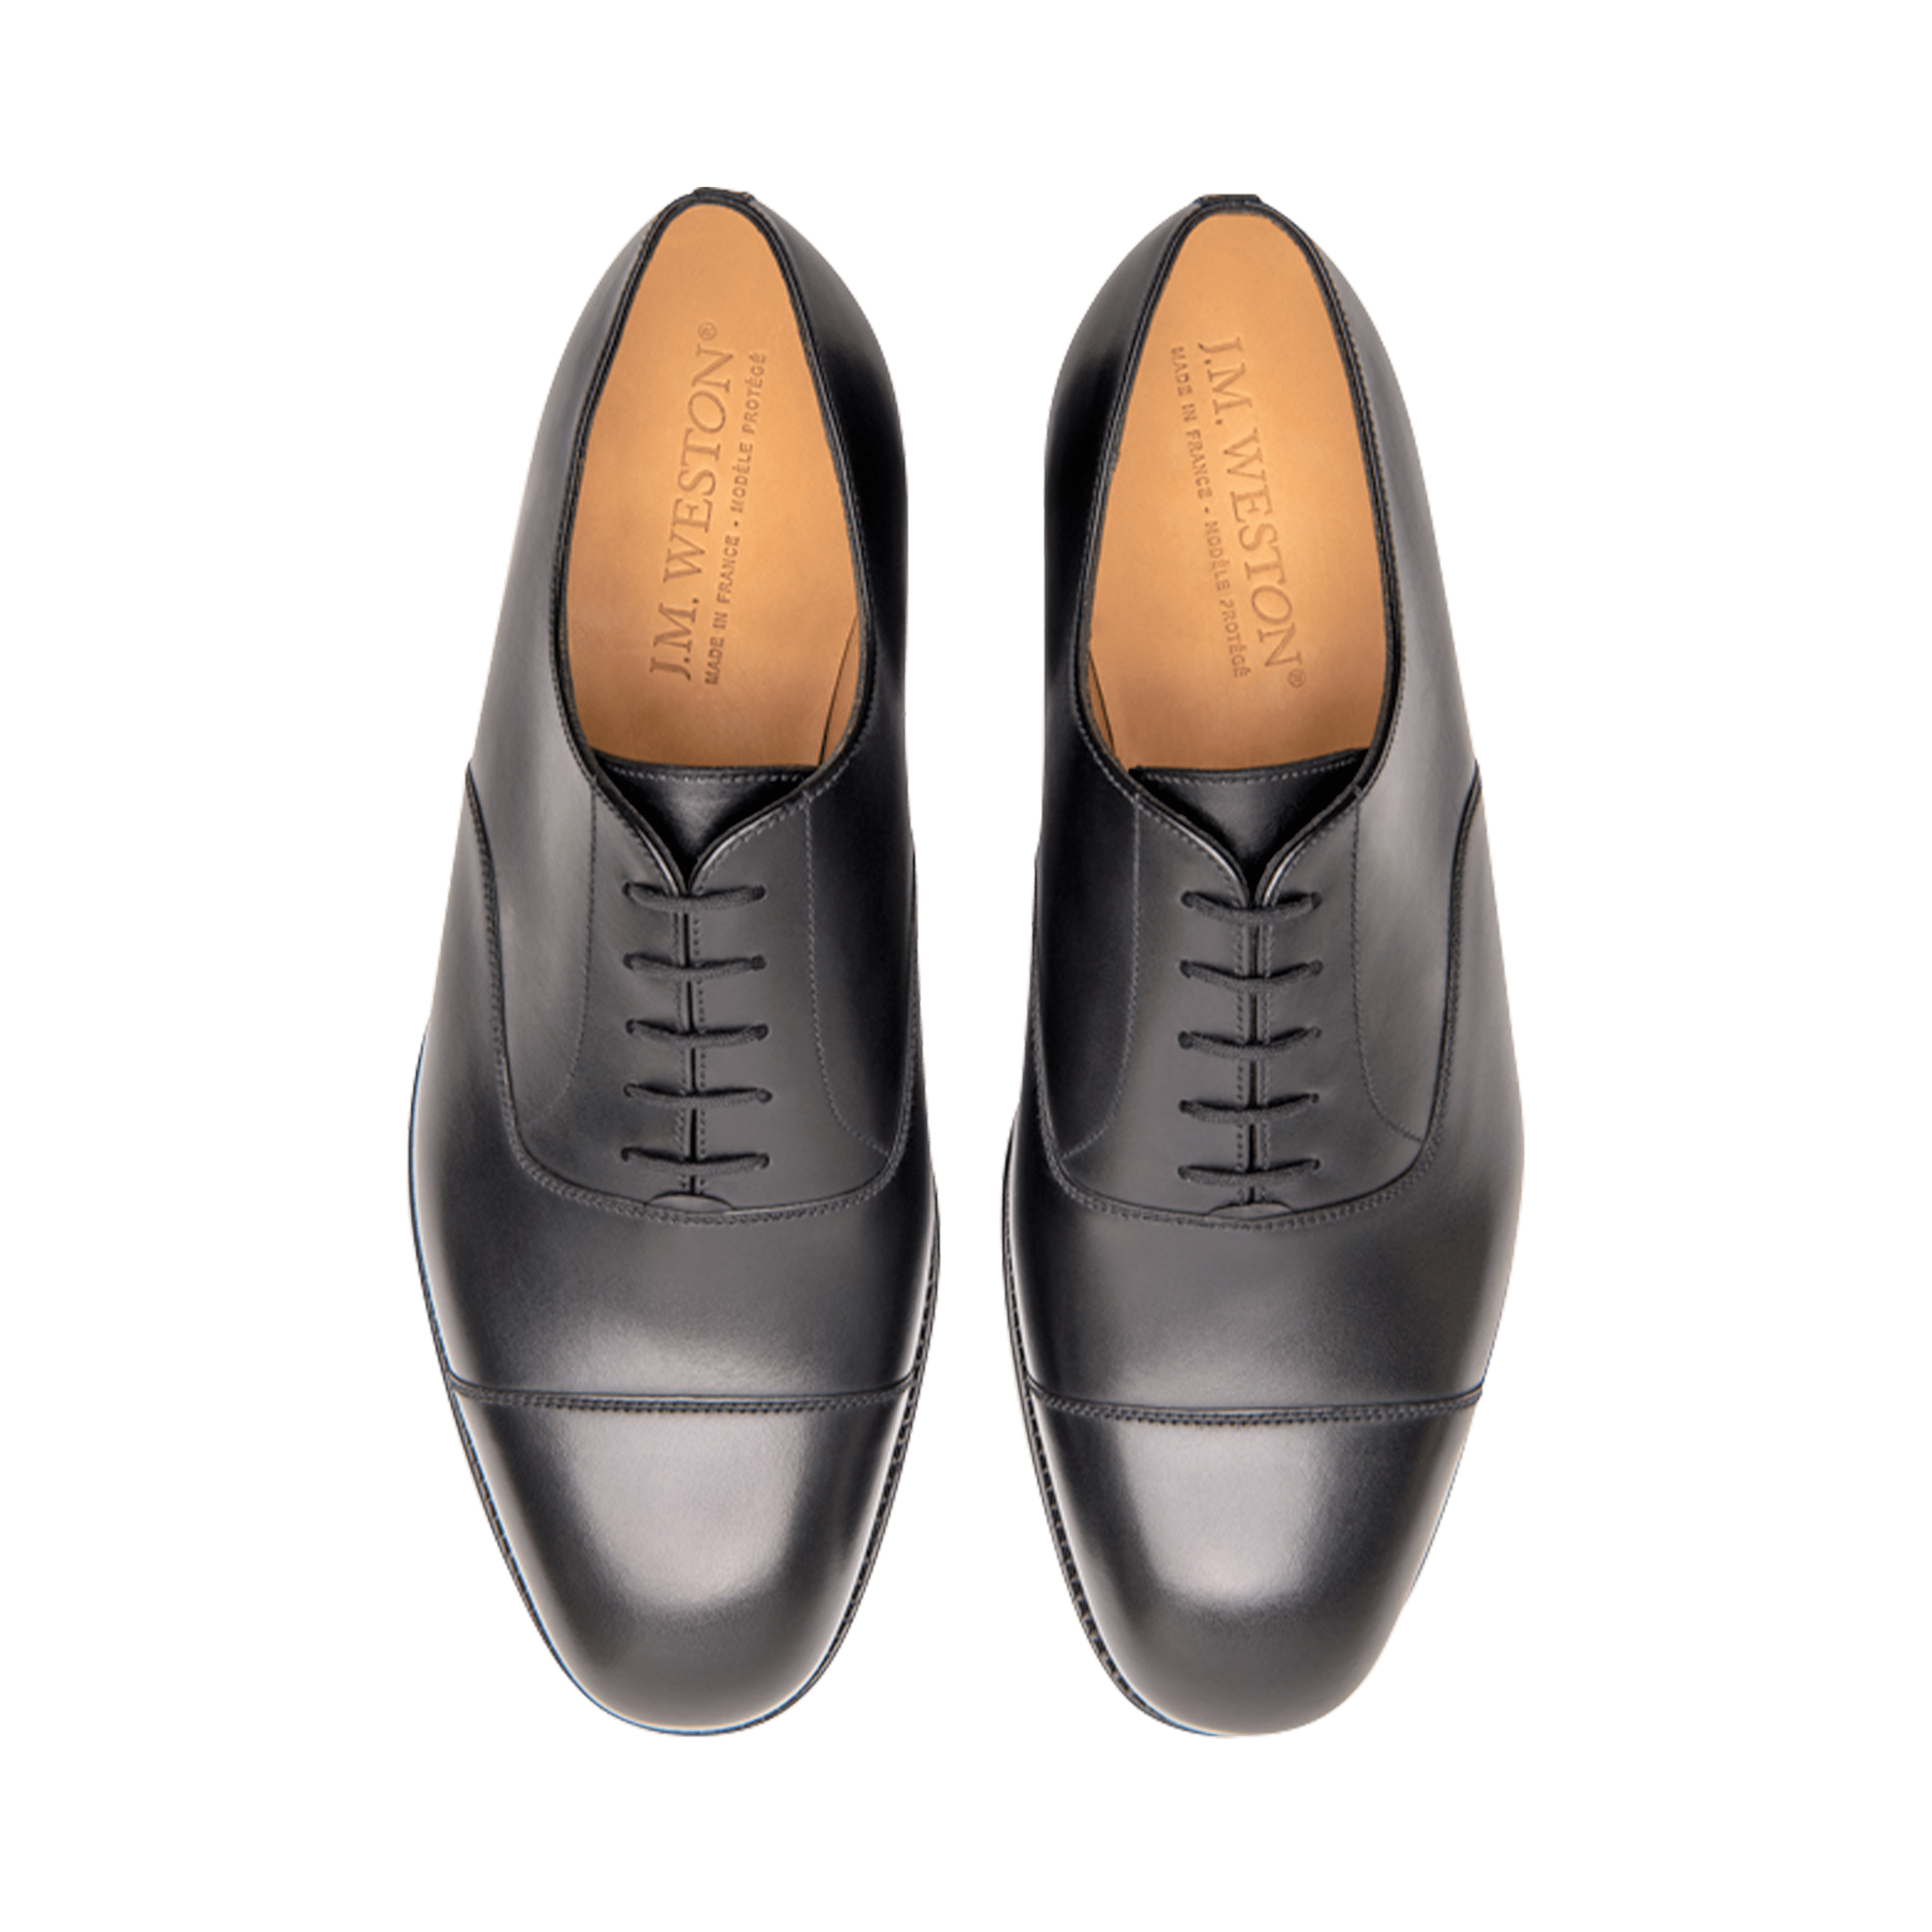 Men's Cap Toe Oxford ShoeBlack Leather – J.M. Weston